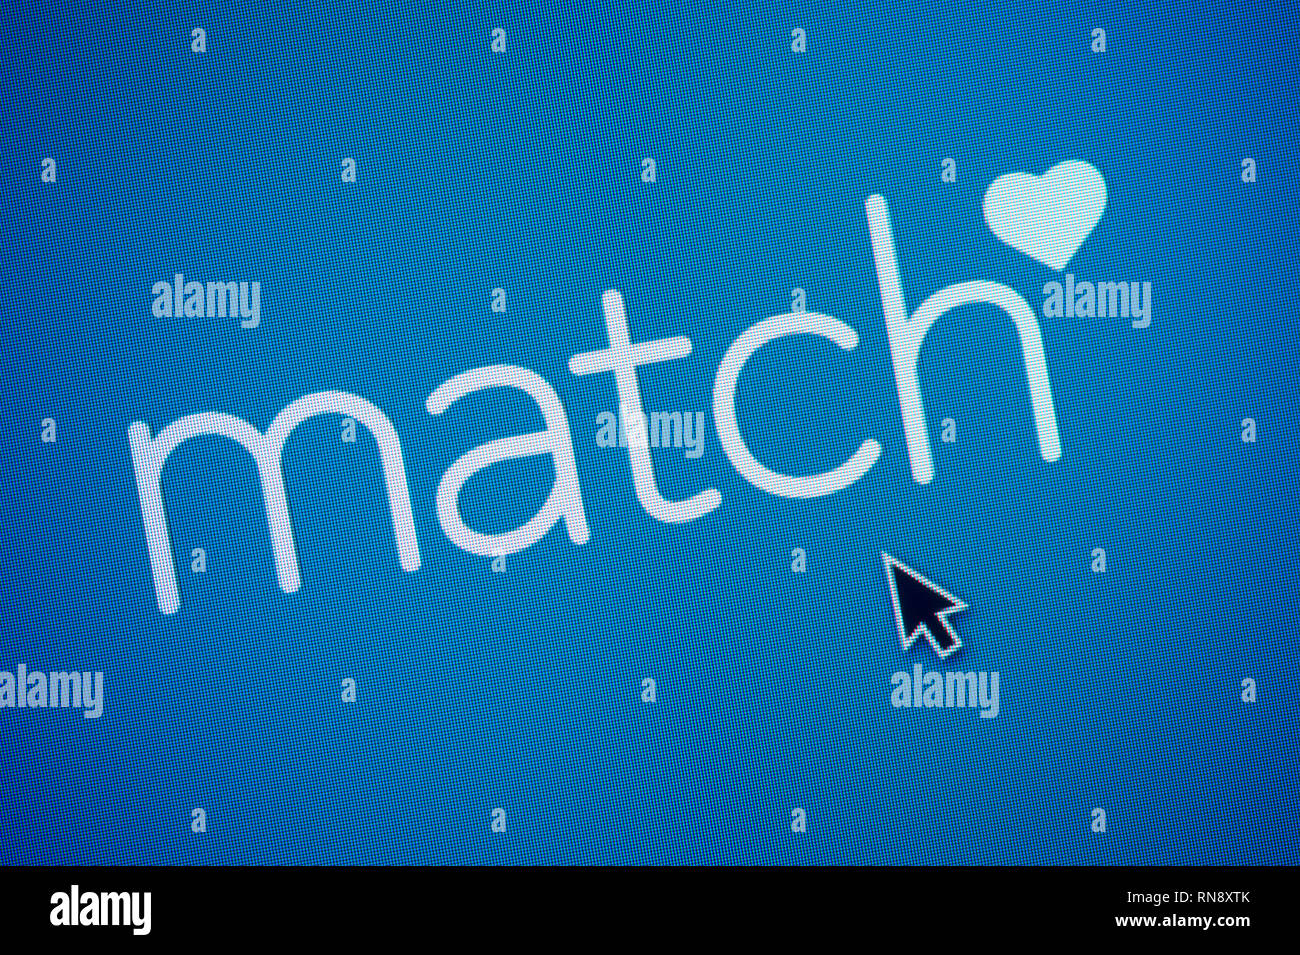 Le logo de Match.com est vu sur l'écran d'un ordinateur avec une souris (curseur utilisation éditoriale uniquement) Banque D'Images